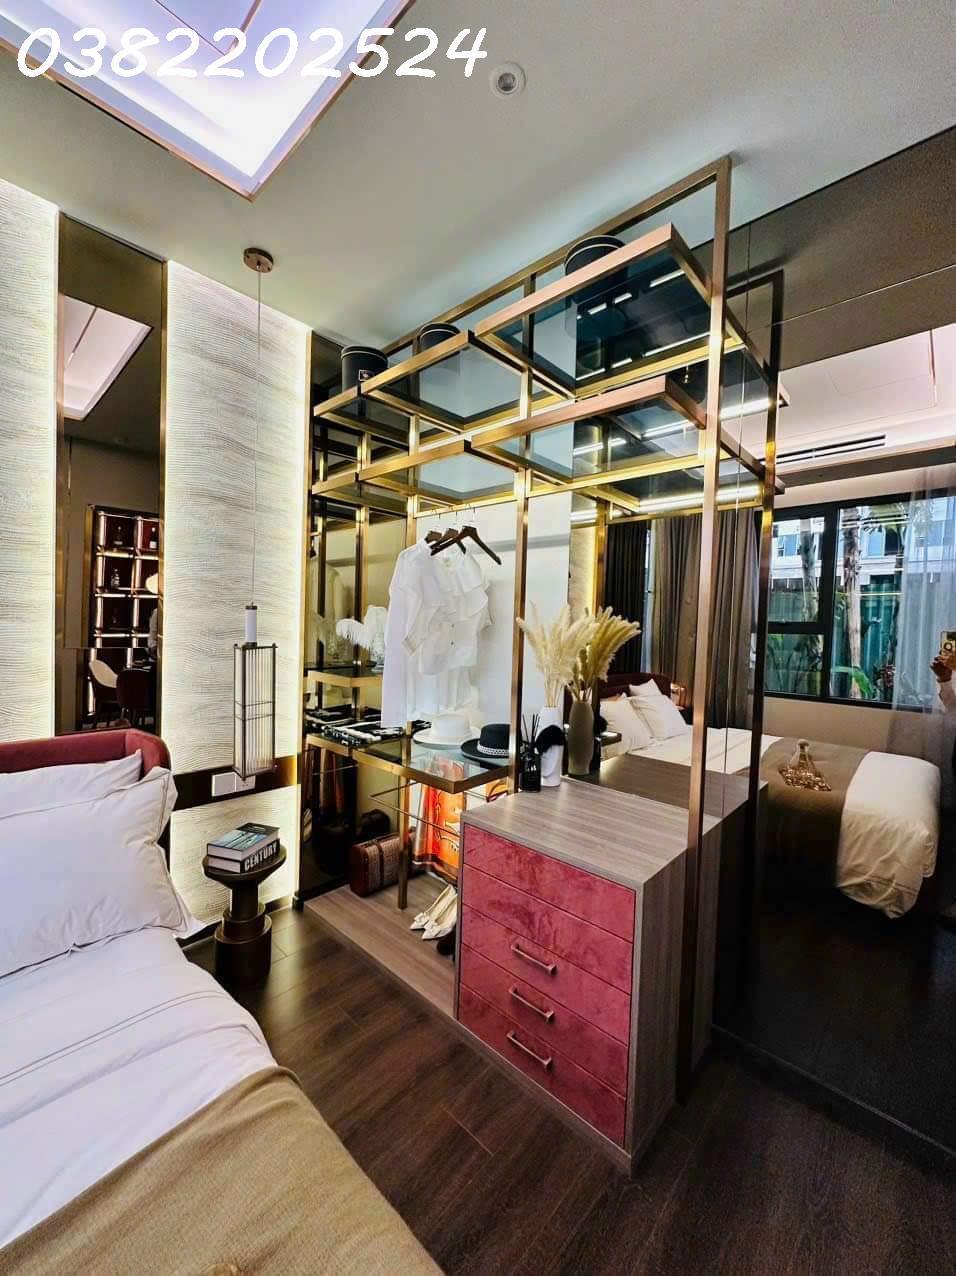 Tặng full nội thất như hình, căn hộ cao cấp mặt tiền Phạm Văn Đồng giá chỉ từ 1,5 tỷ LH 0382202524 3